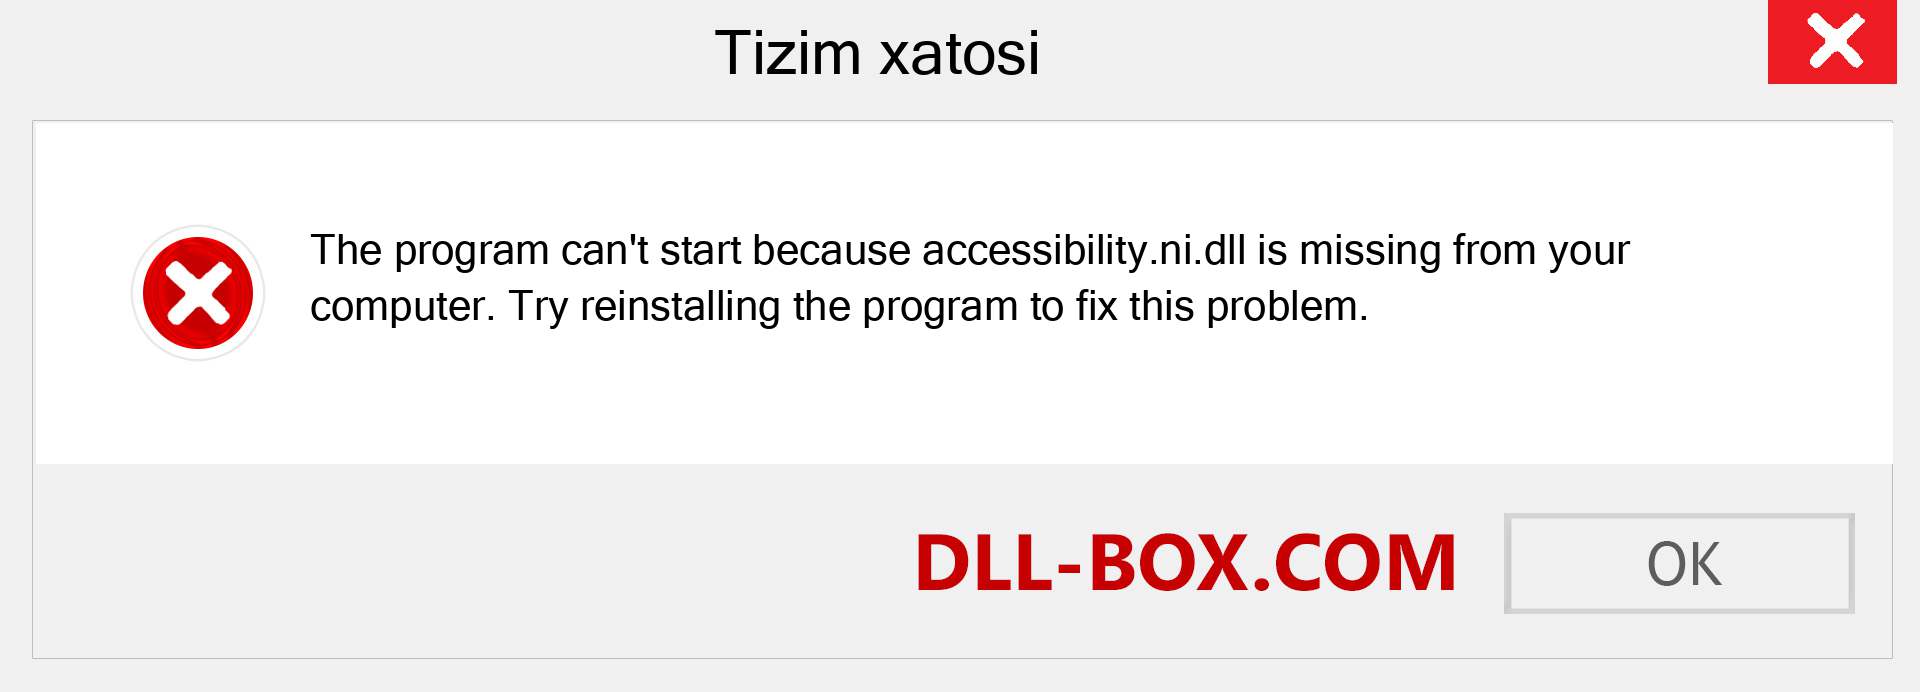 accessibility.ni.dll fayli yo'qolganmi?. Windows 7, 8, 10 uchun yuklab olish - Windowsda accessibility.ni dll etishmayotgan xatoni tuzating, rasmlar, rasmlar